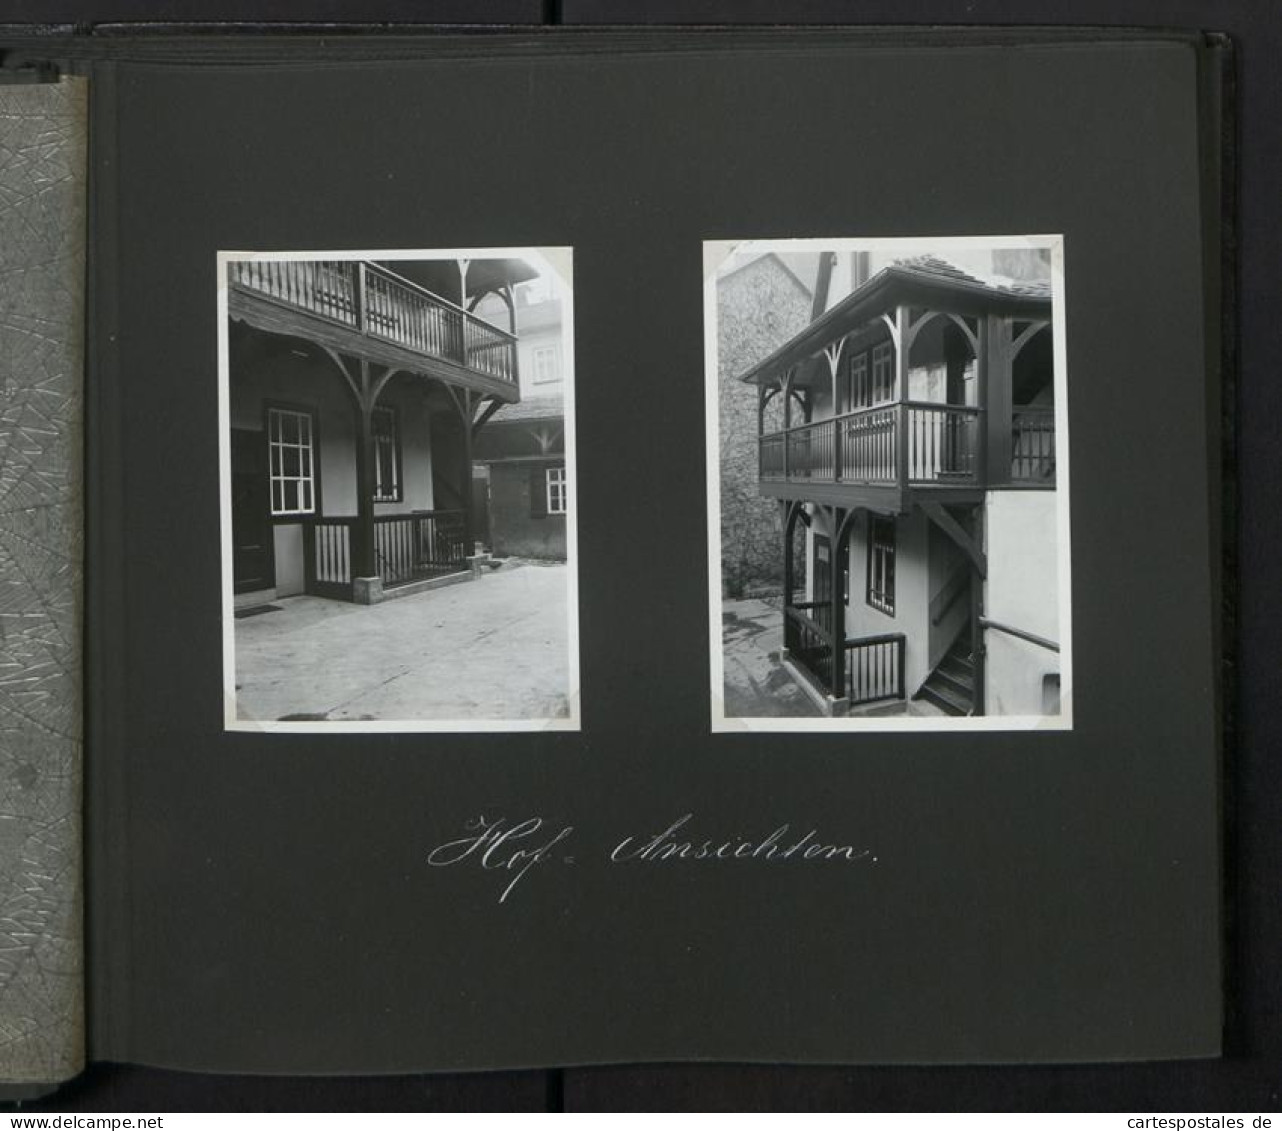 Fotoalbum mit 115 Fotografien, Ansicht Erfurt, Geschäfts und Wohnhaus Kohlen Schoenheinz in der Neuwerkstrasse 16 